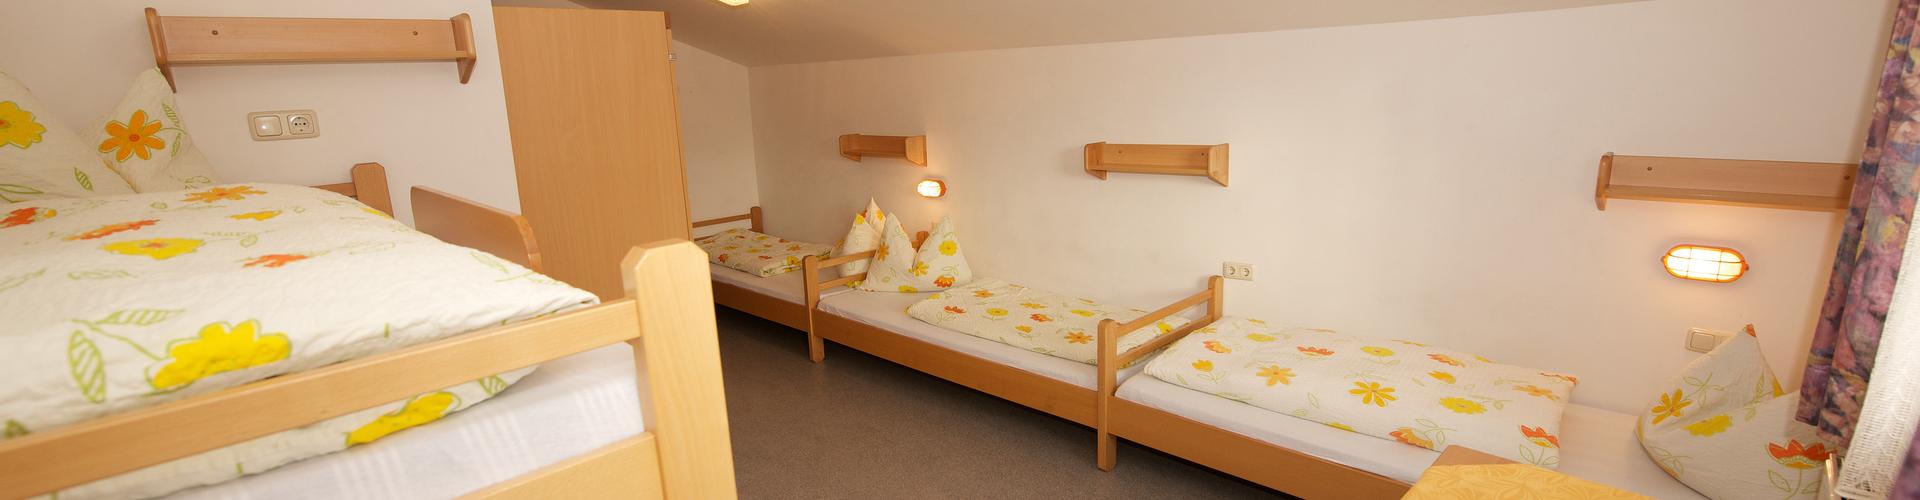 Zimmer im Jugendferienhaus in Saalbach